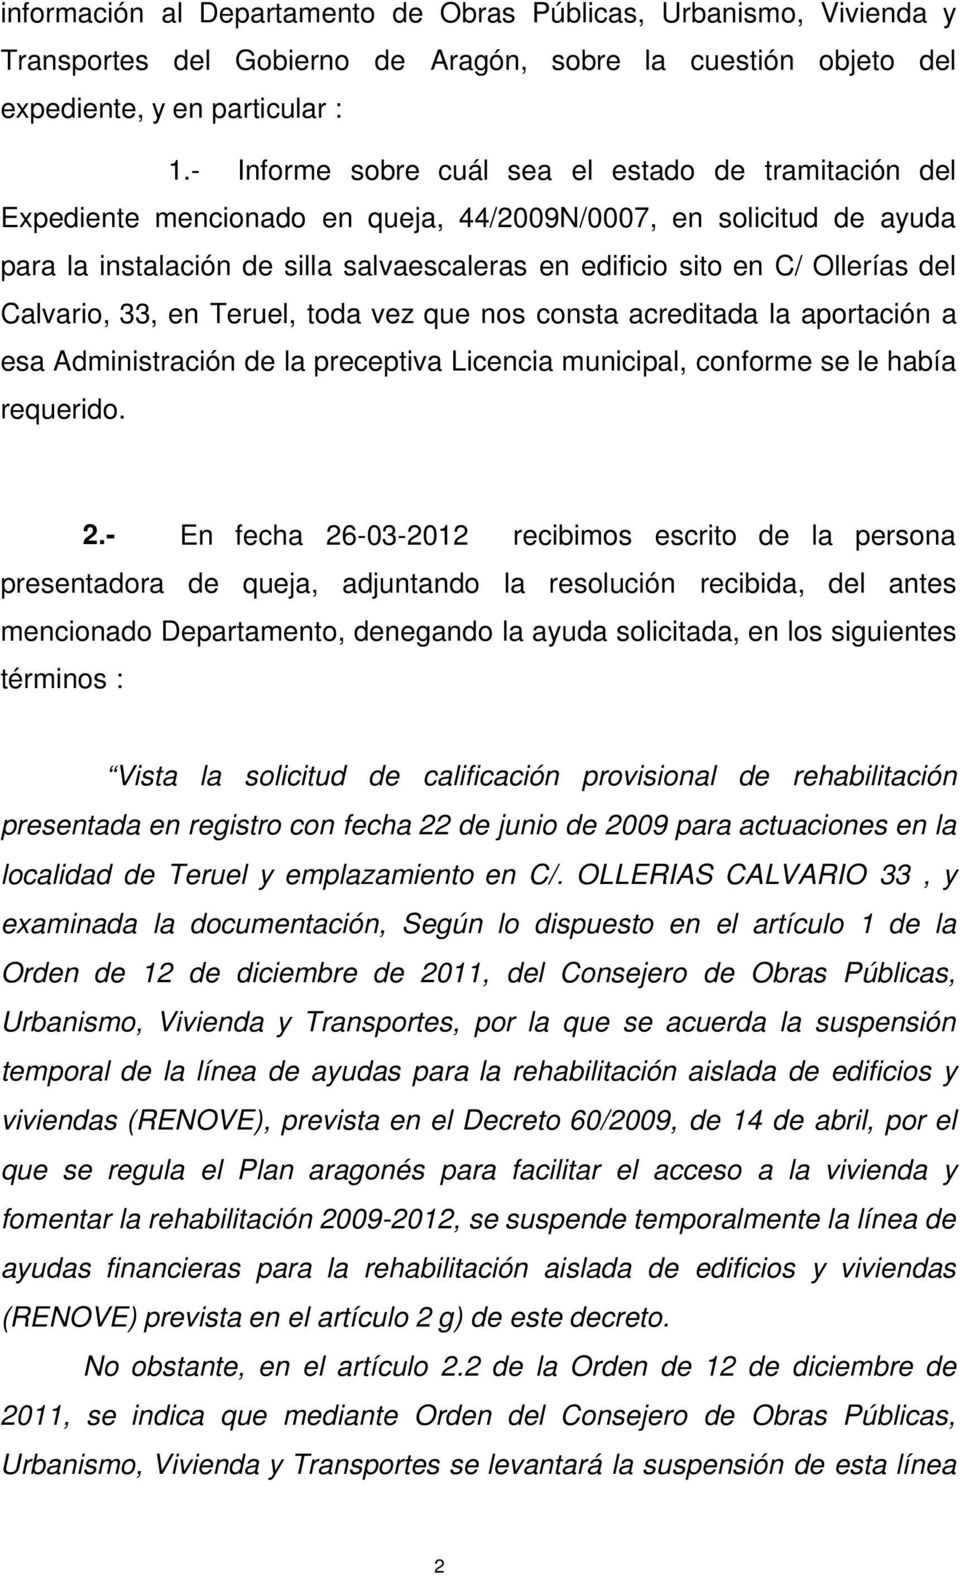 del Calvario, 33, en Teruel, toda vez que nos consta acreditada la aportación a esa Administración de la preceptiva Licencia municipal, conforme se le había requerido. 2.